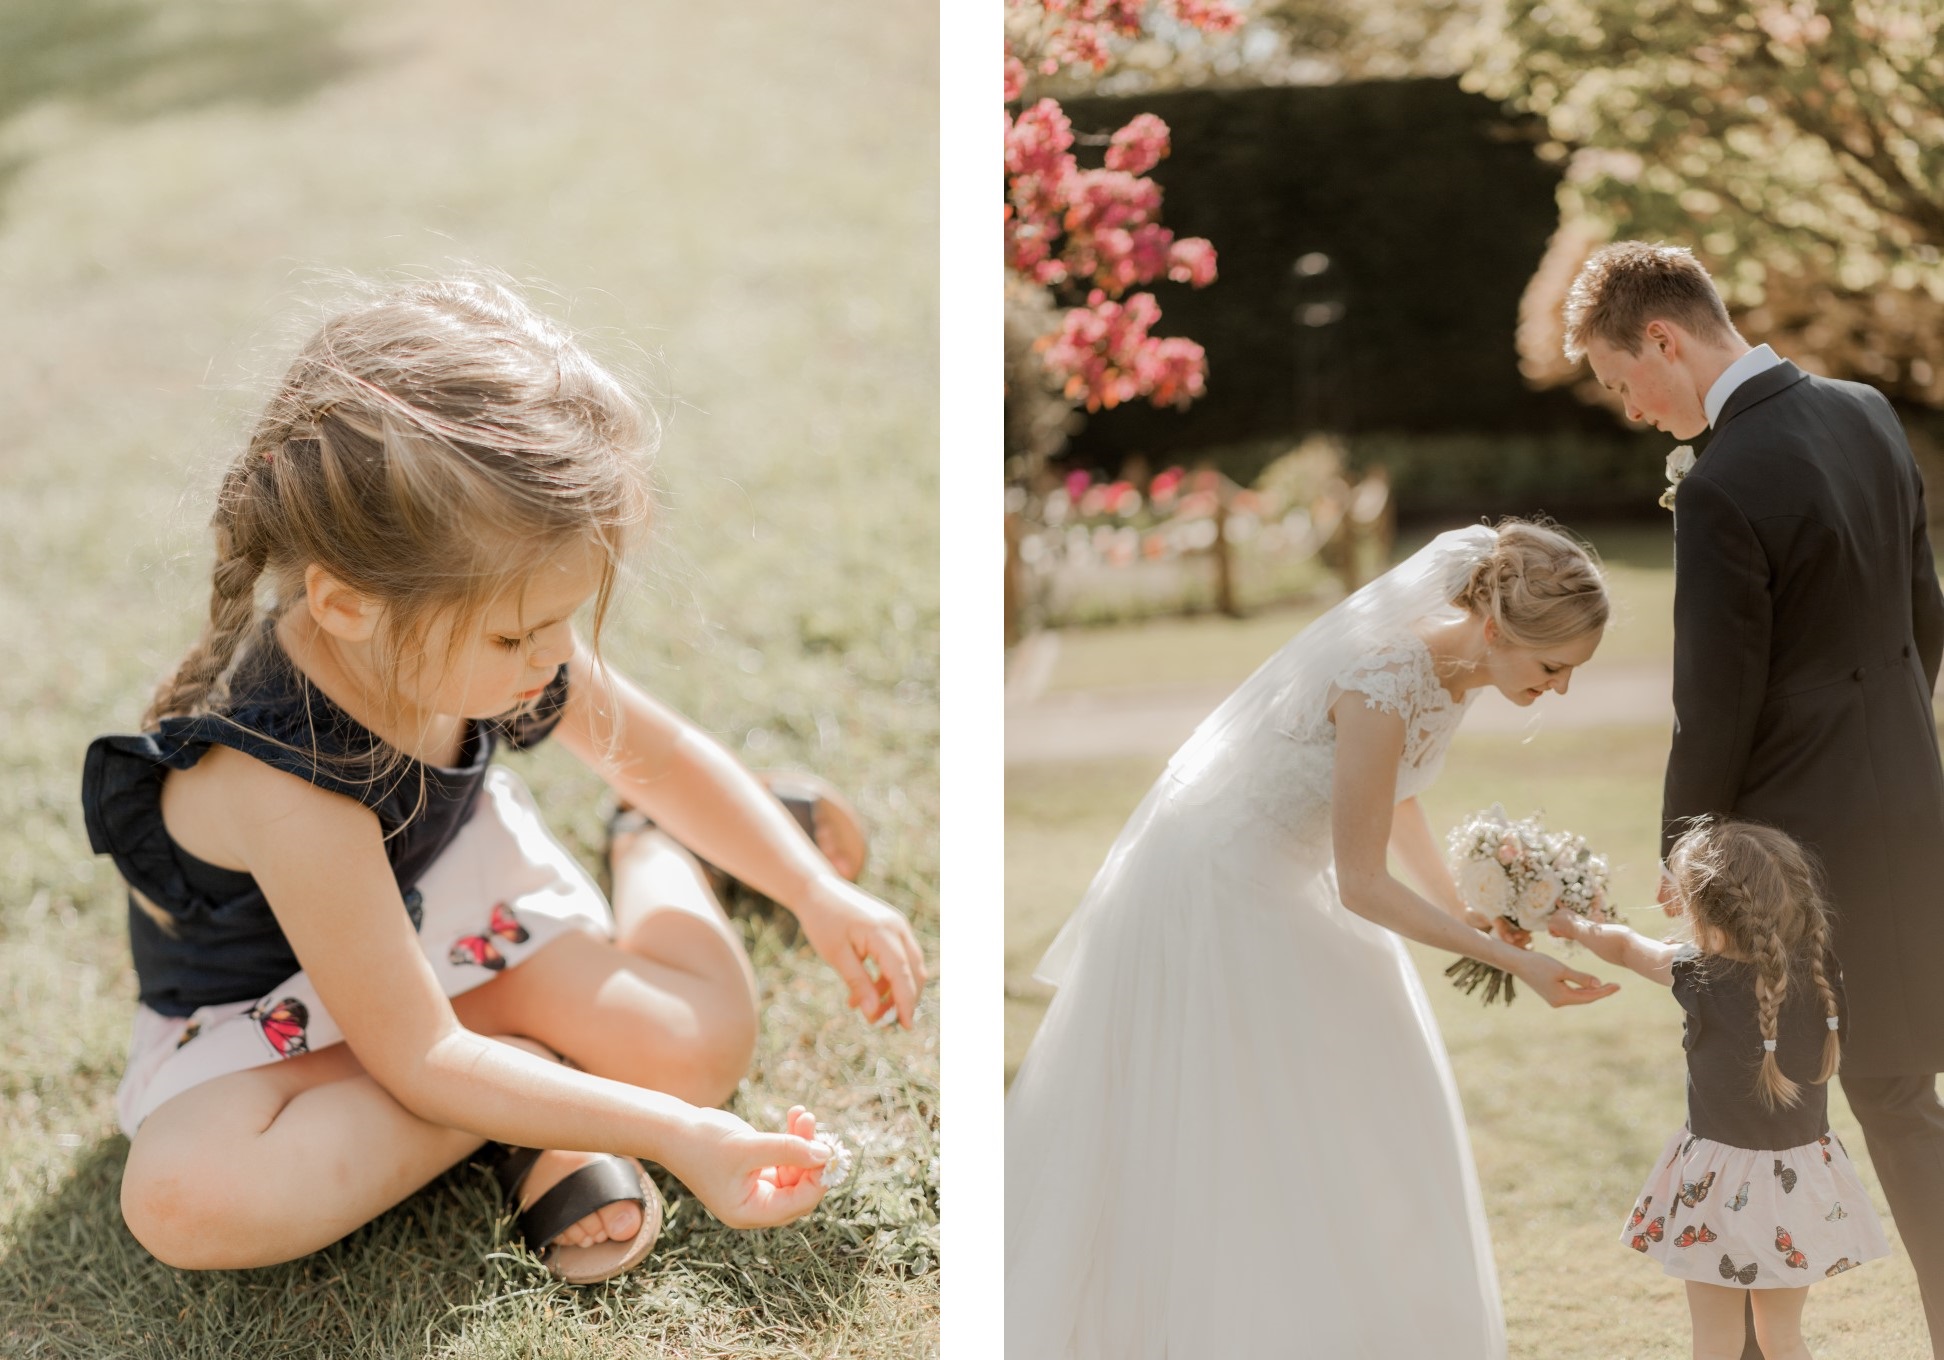 Une petite fille préparant le bouquet de la mariée.